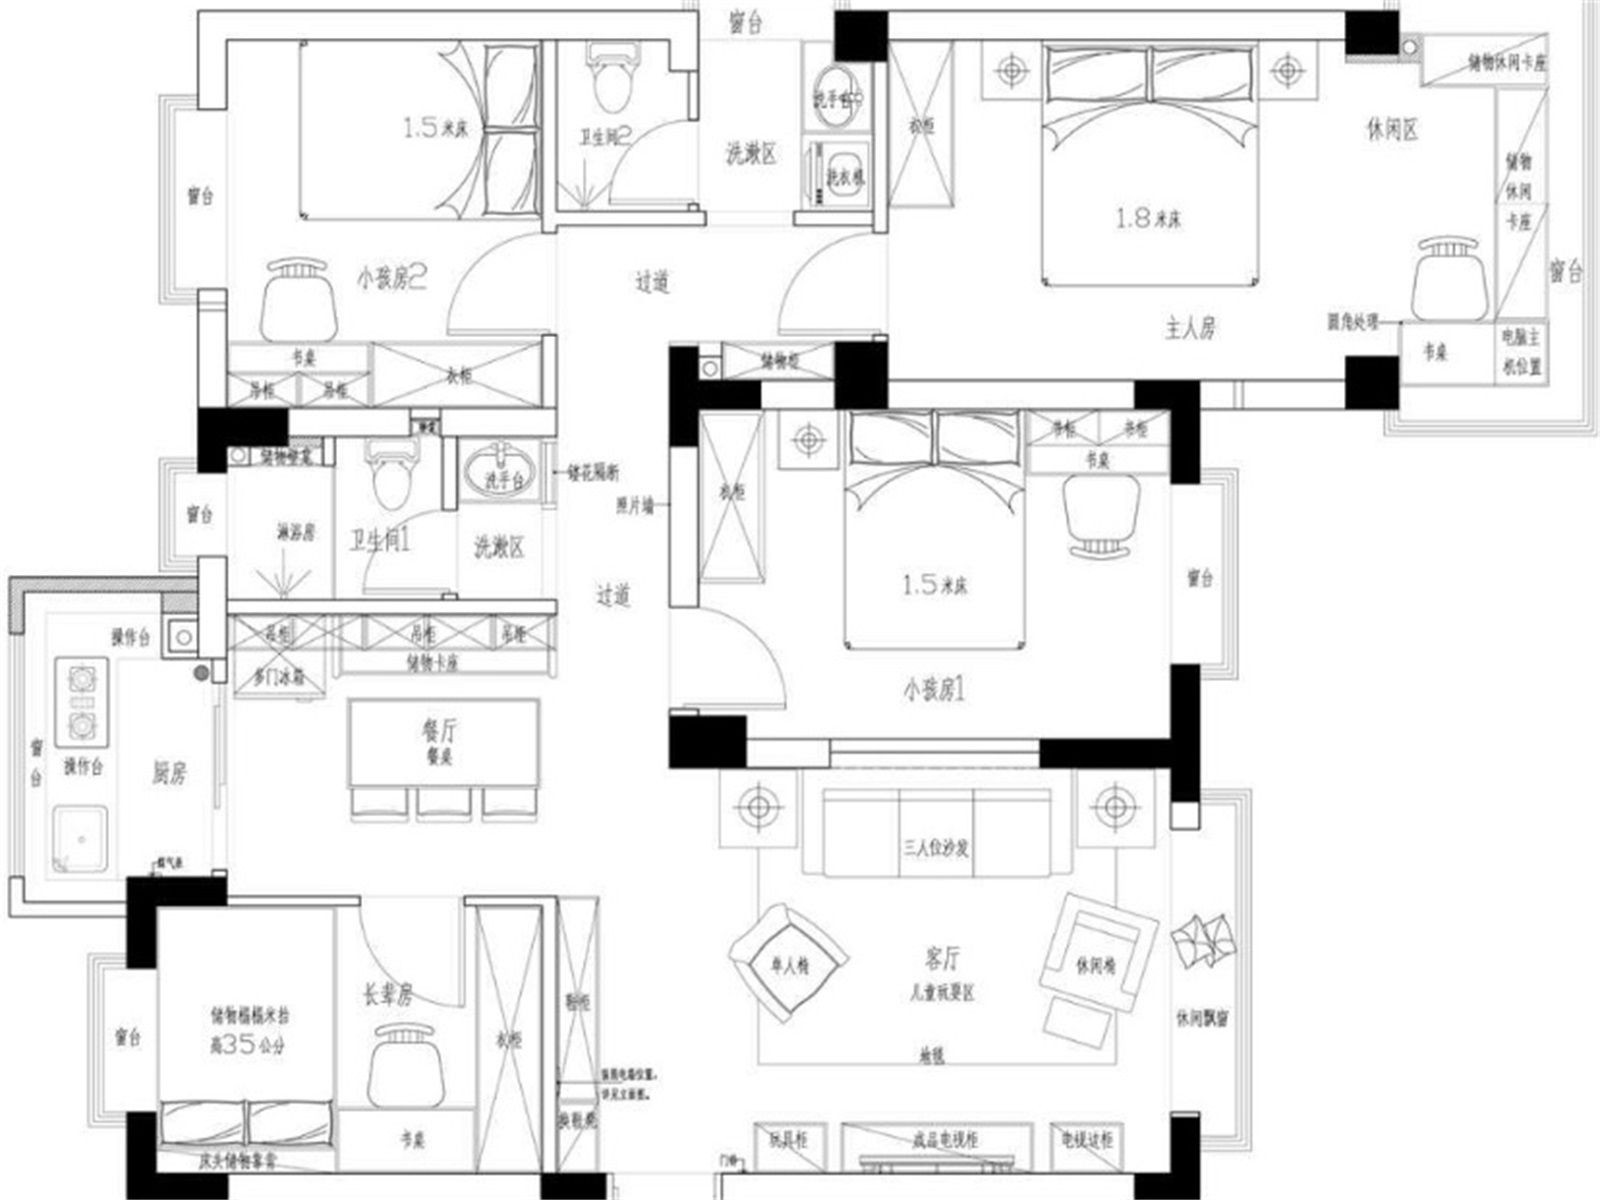 130现代三房装修效果图,演绎简约宁静之居装修案例效果图-美广网(图1)